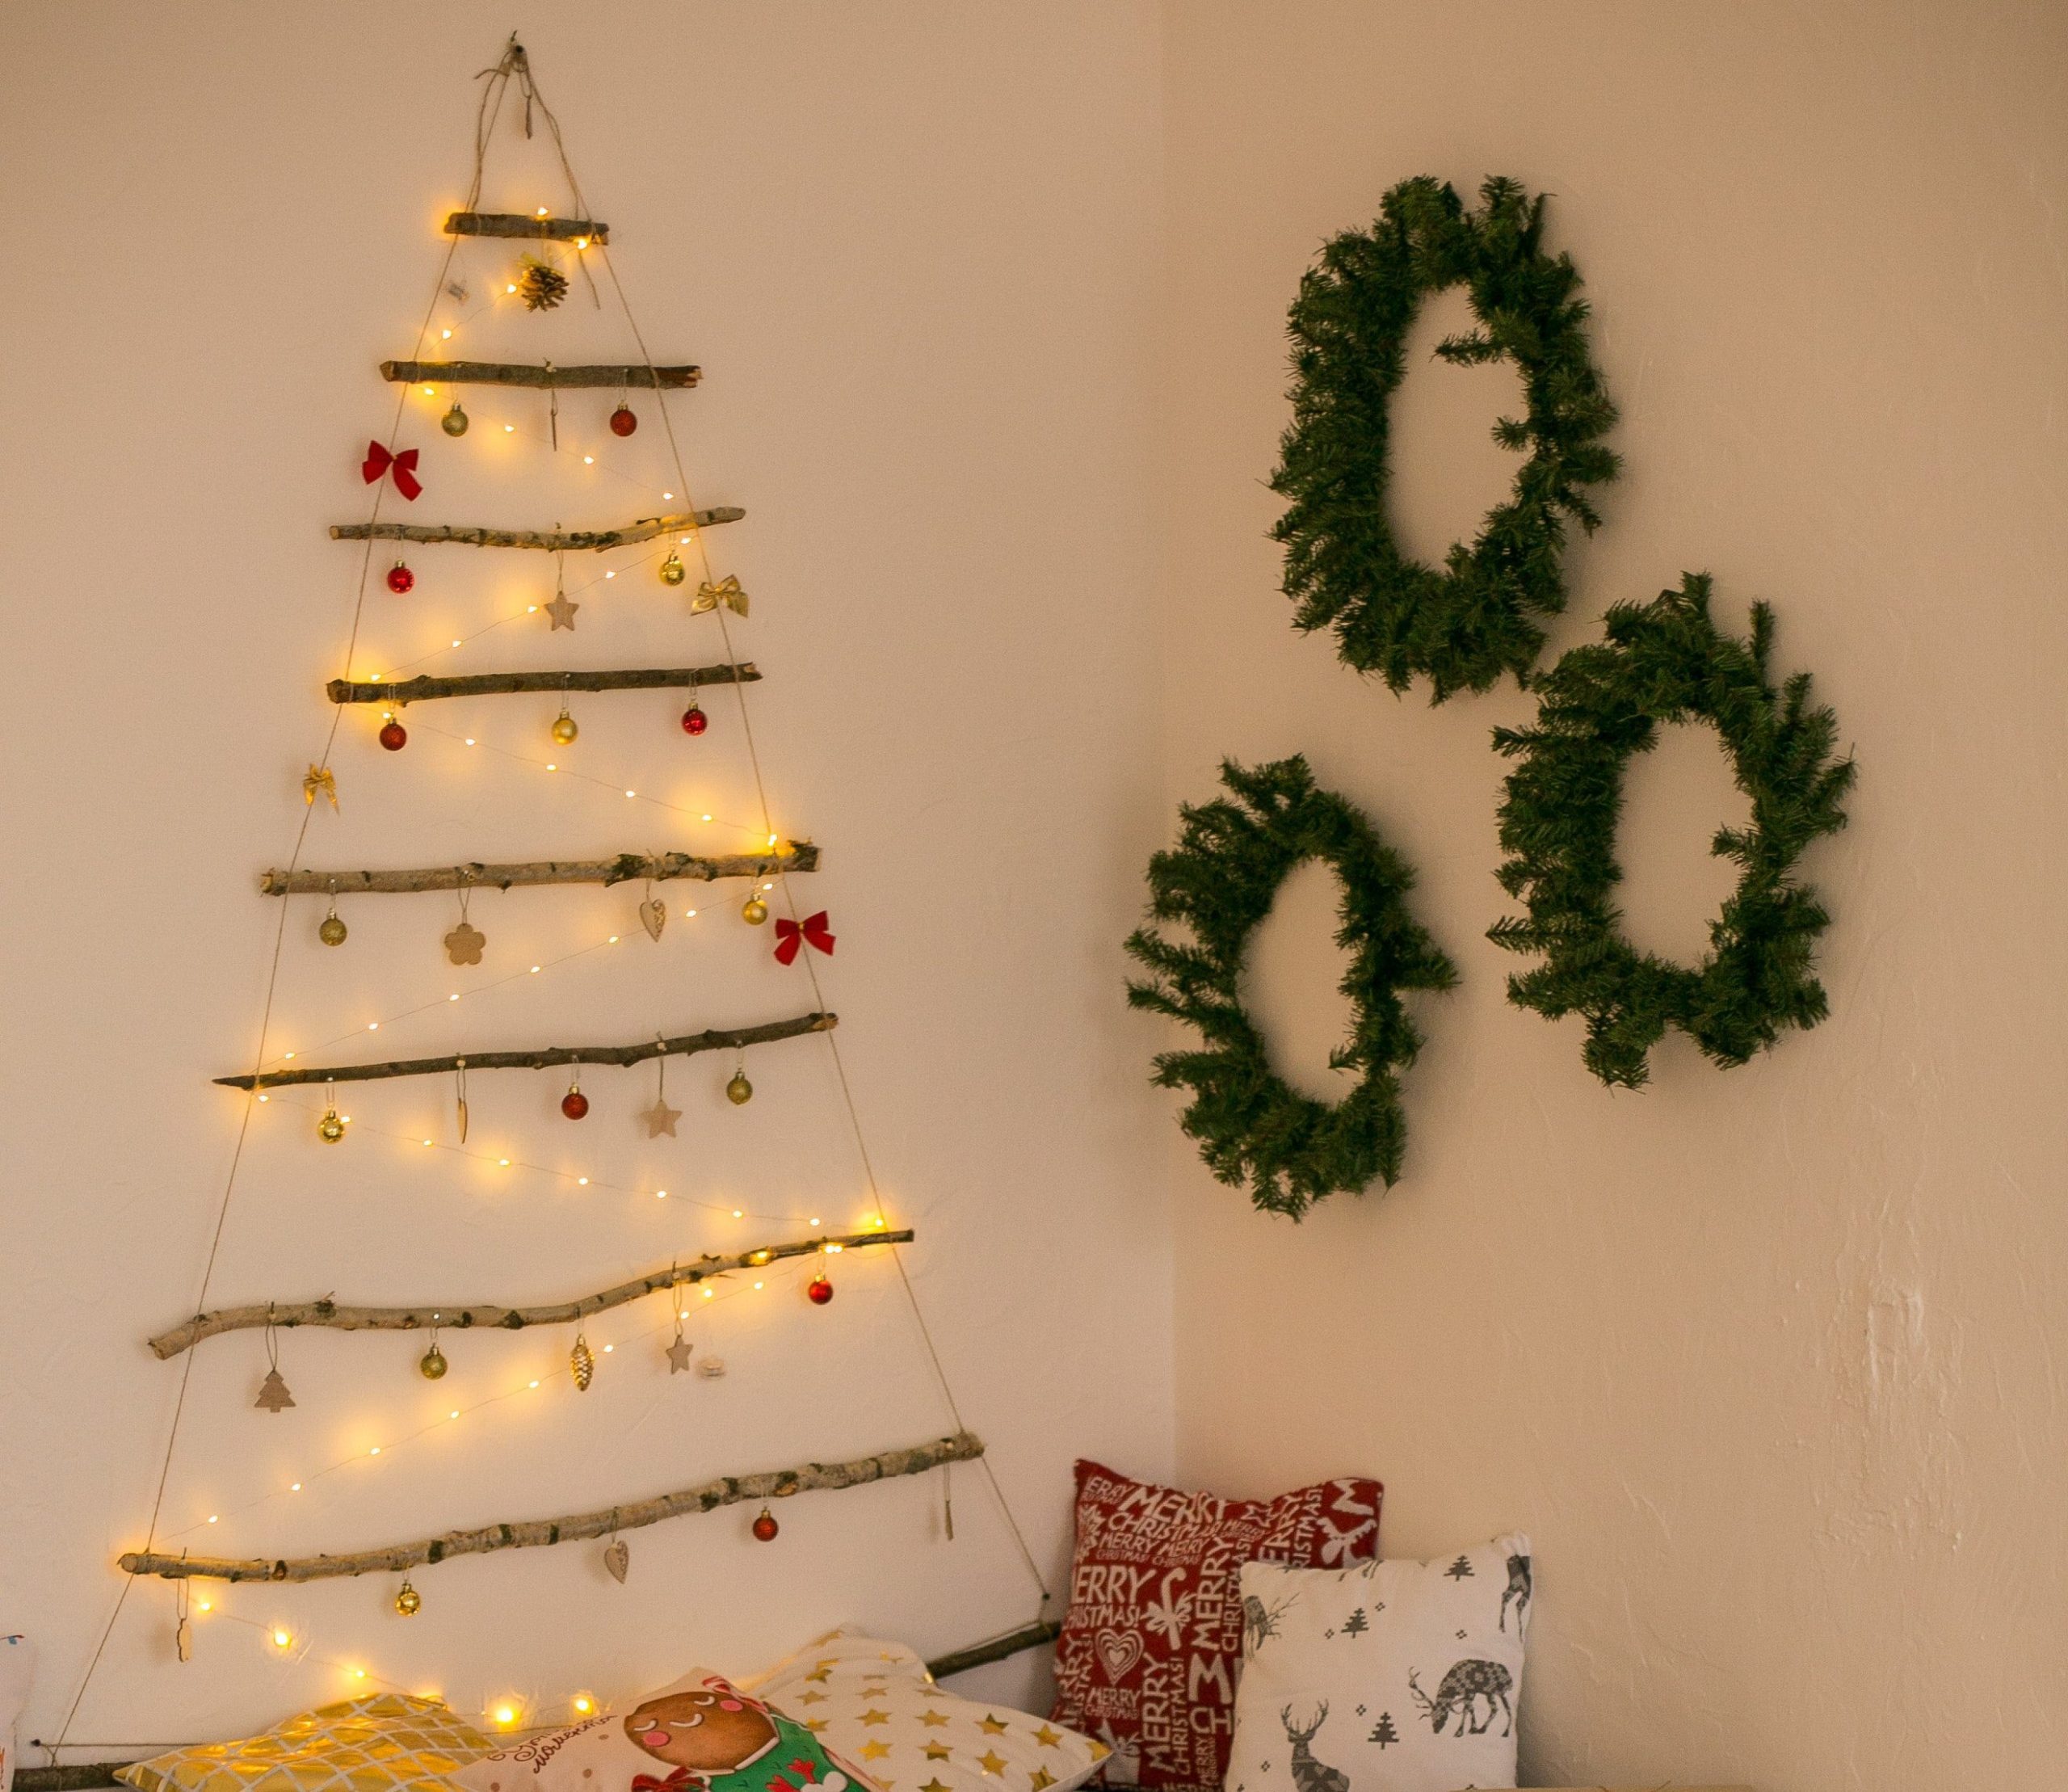 Guirlandas na parede podem compor a decoração da sua árvore de Natal na parede. 